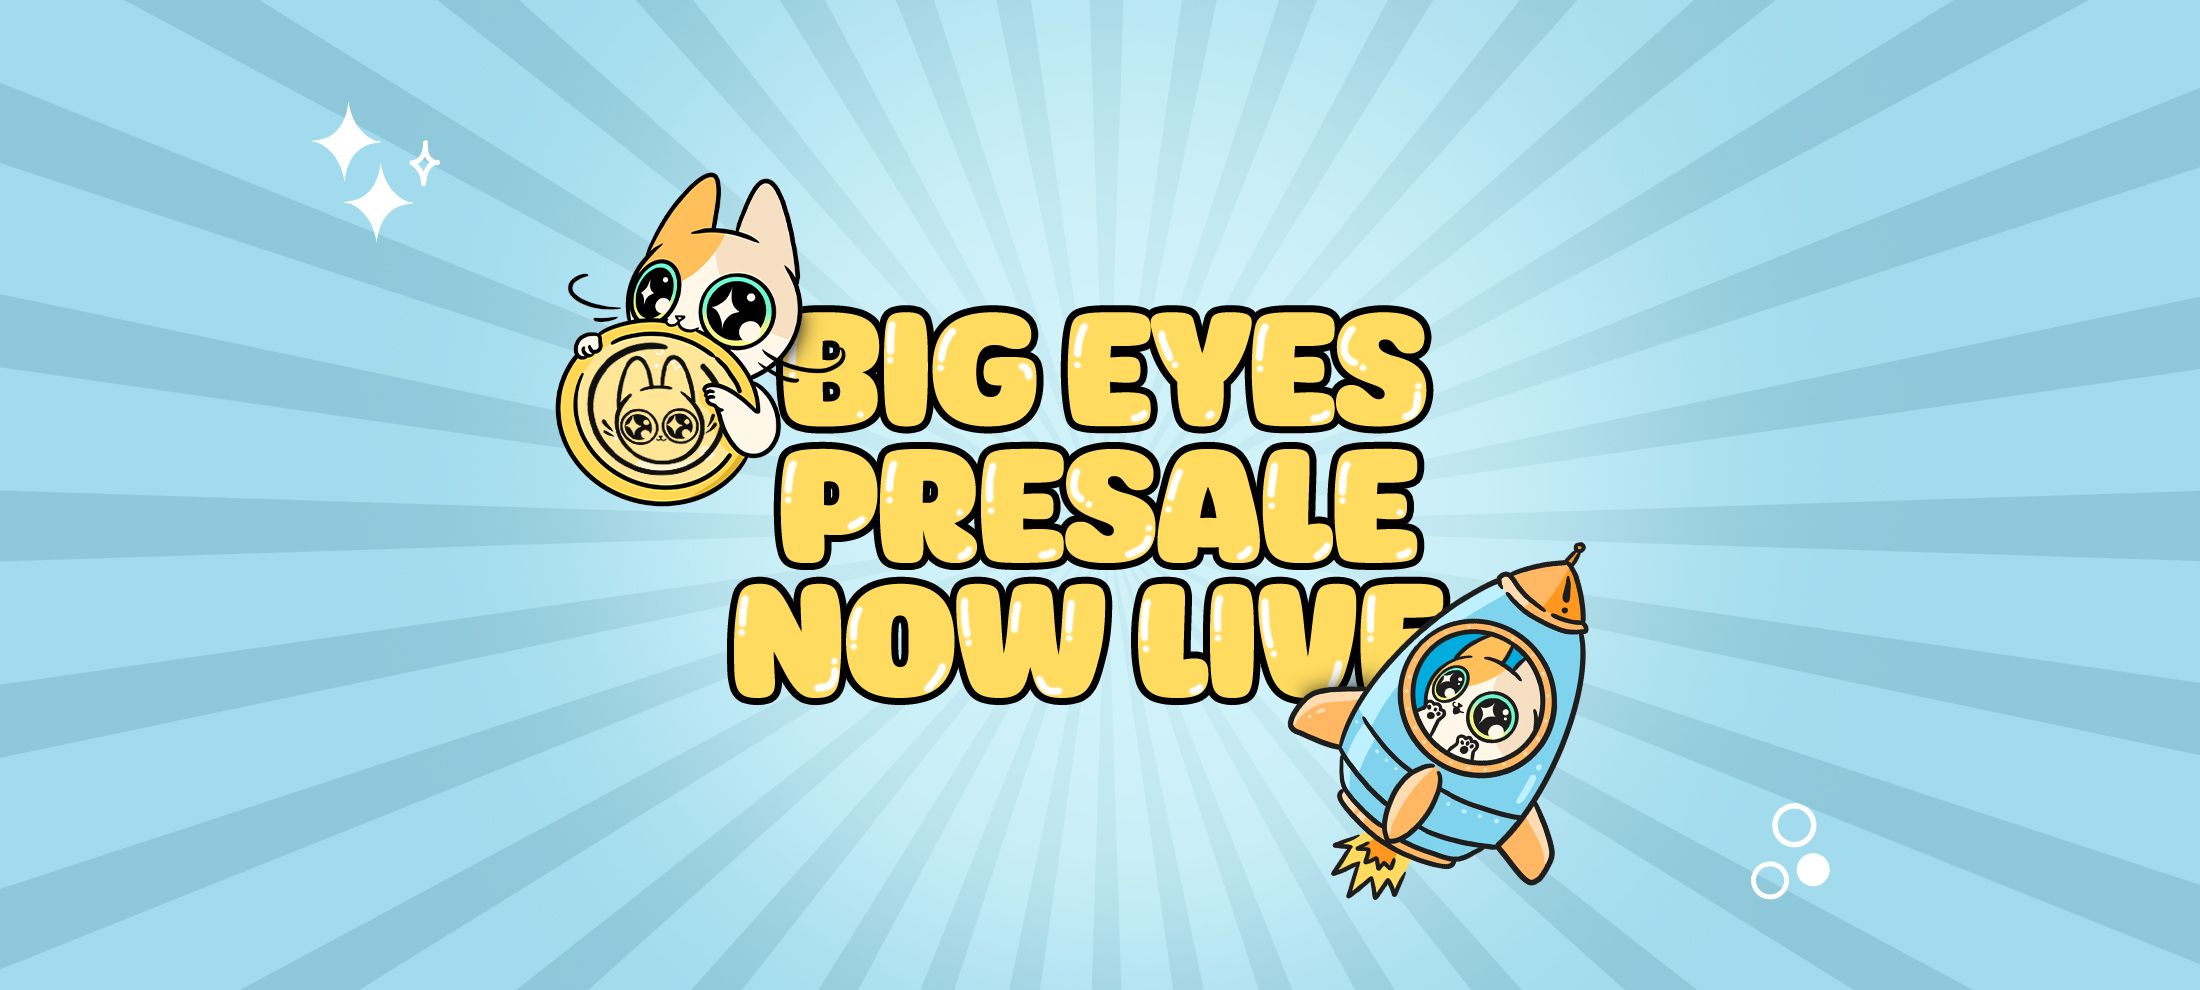 Big Eyes - presale is live.